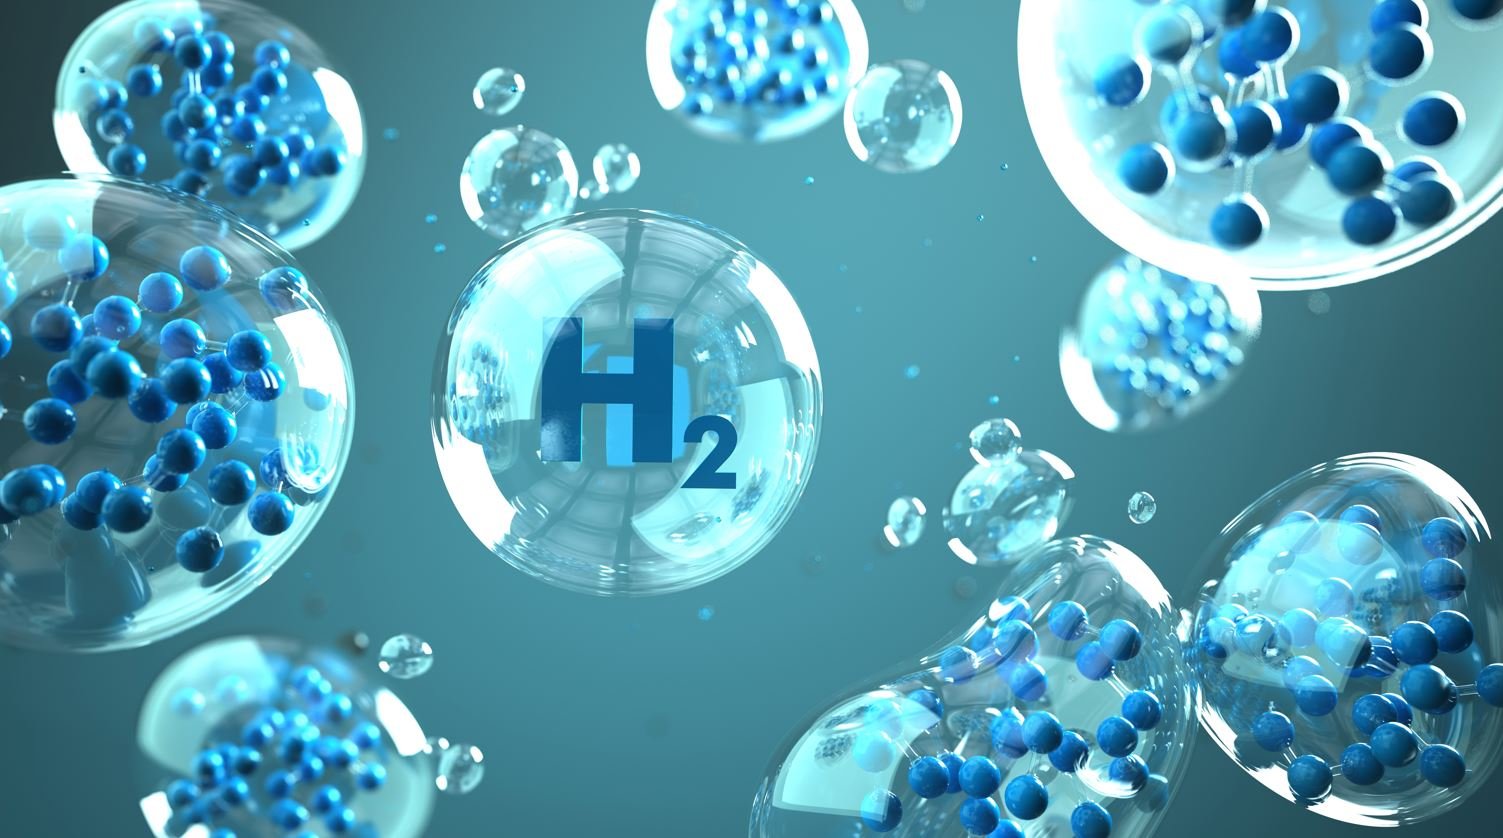 Hydro sở hữu 05 đặc tính nổi trội, hỗ trợ bảo vệ sức khỏe và chăm sóc sắc đẹp hiệu quả: phân tử nhỏ nhất, liên kết chọn lọc, chất chống oxy hóa, không mùi, không vị và an toàn